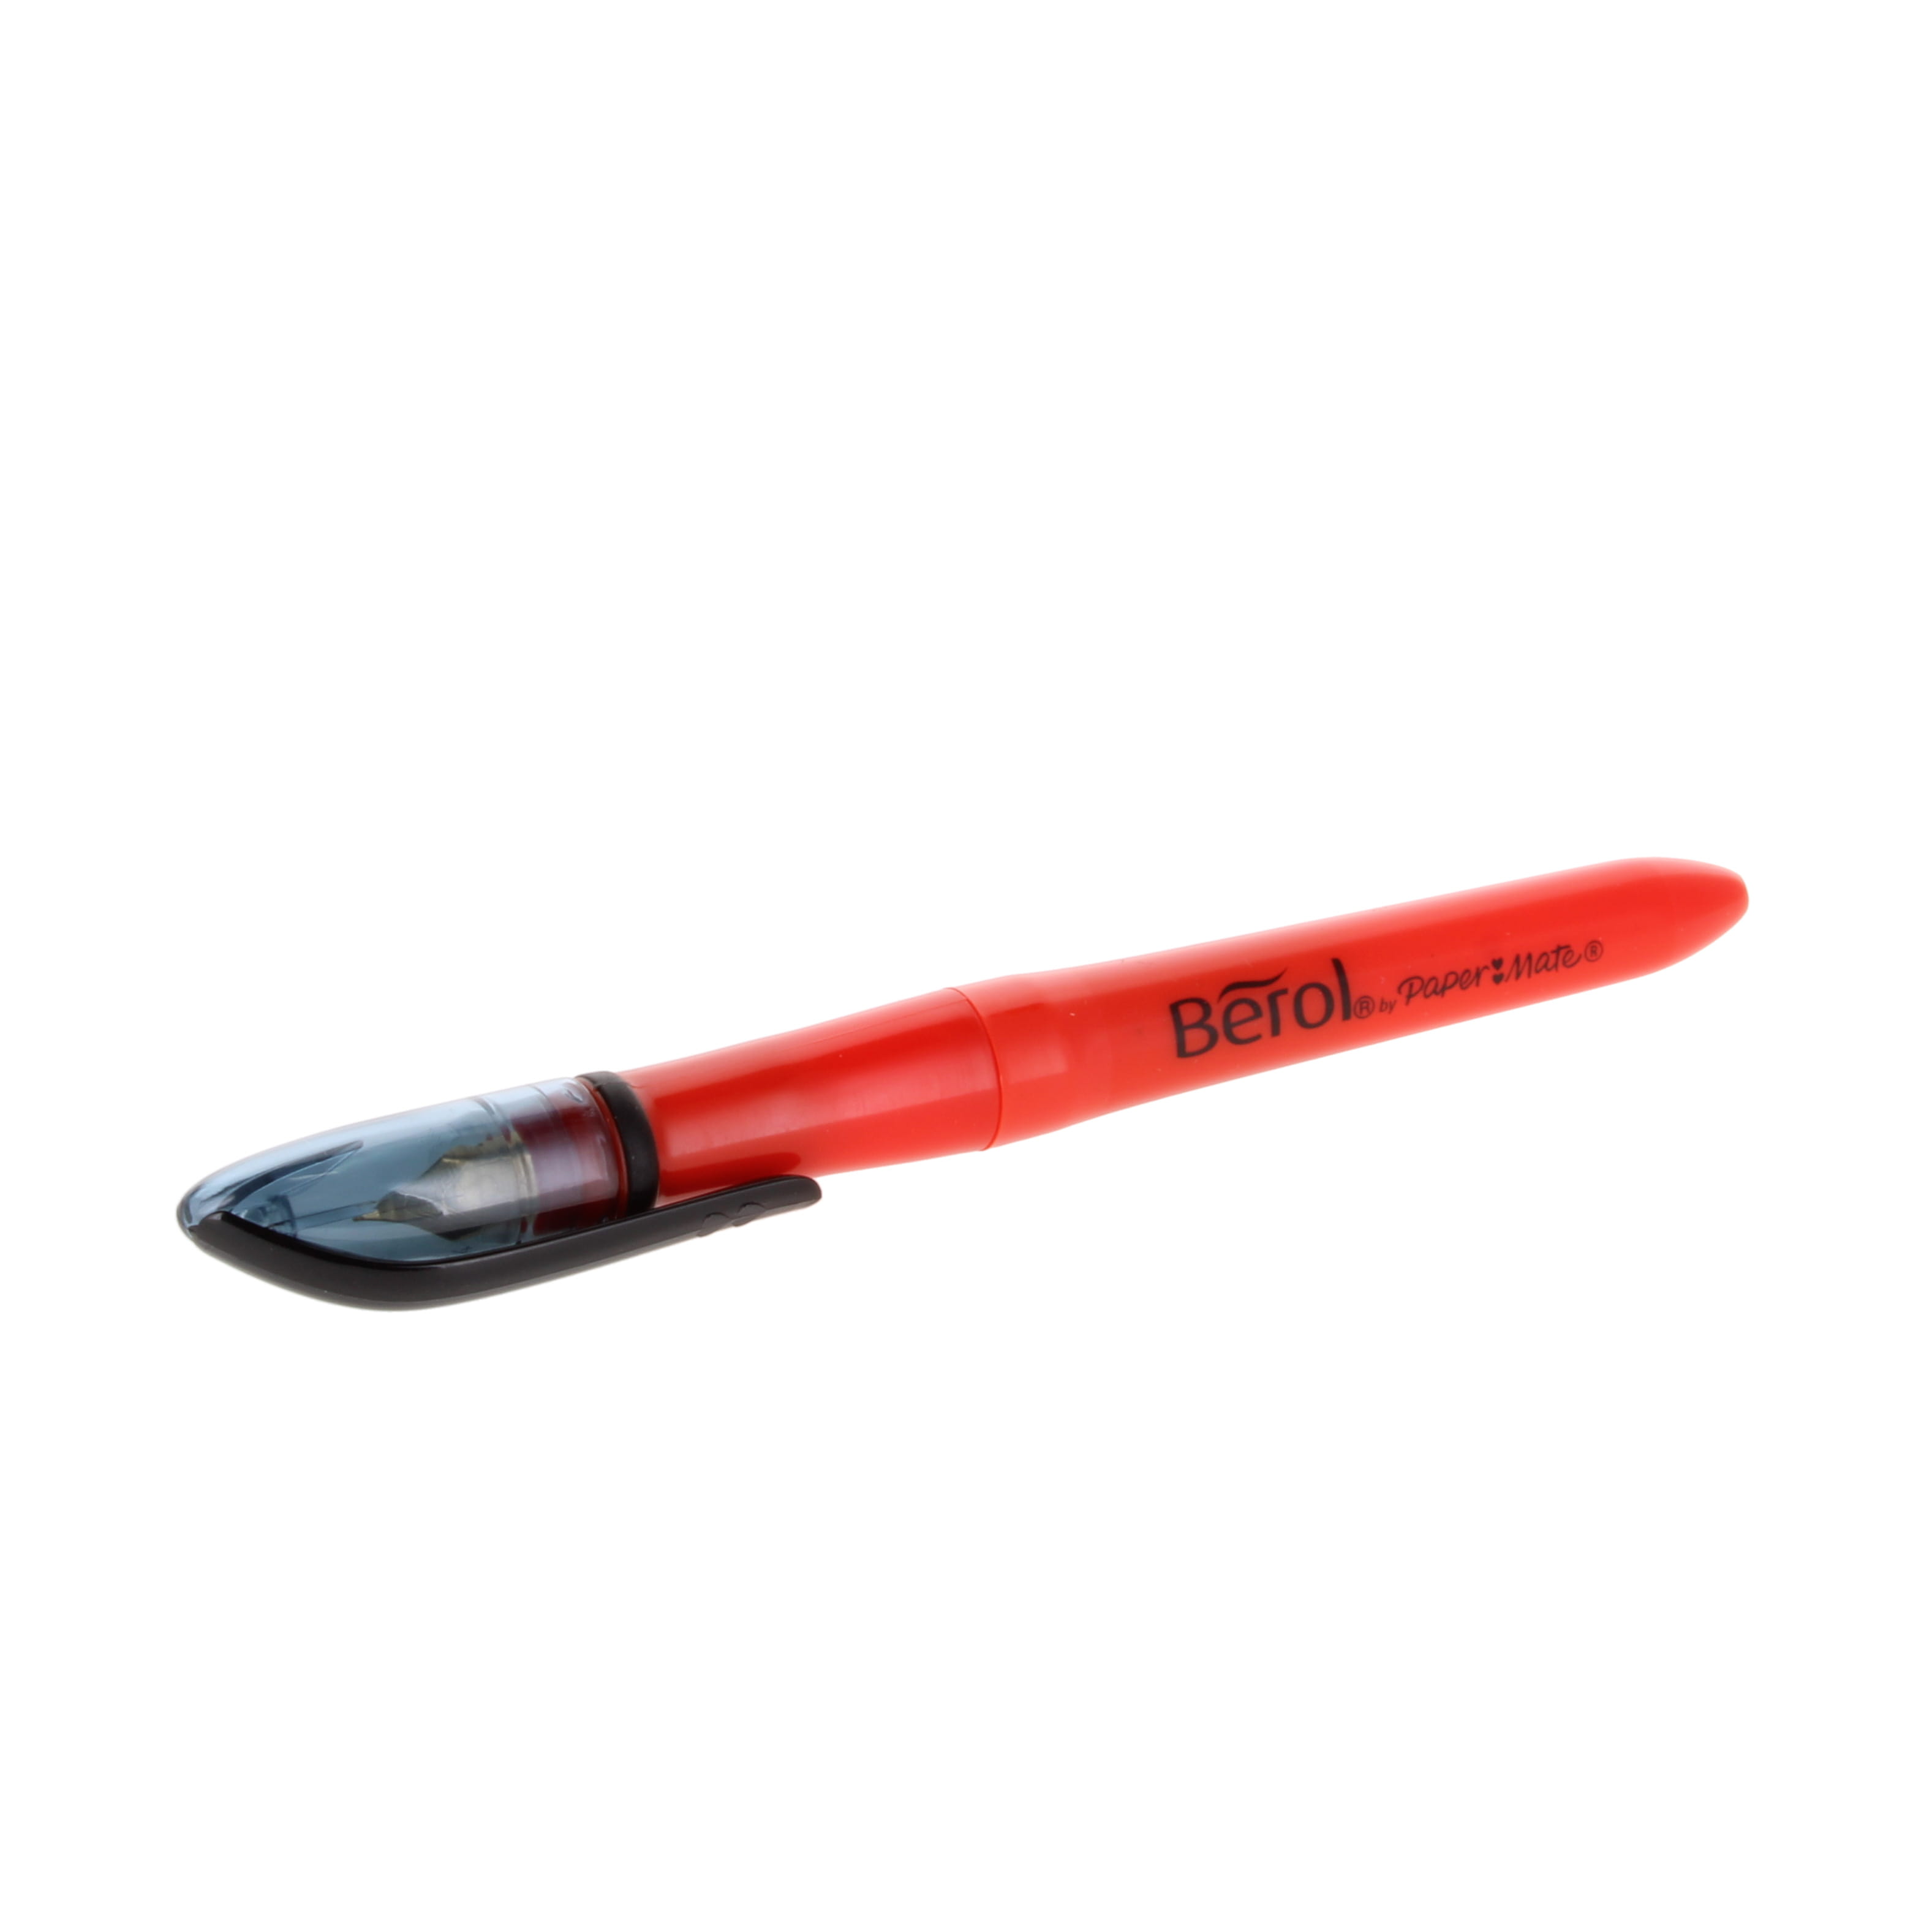 Berol Handwriting Cartridge Pens - pack of 12 - STH14